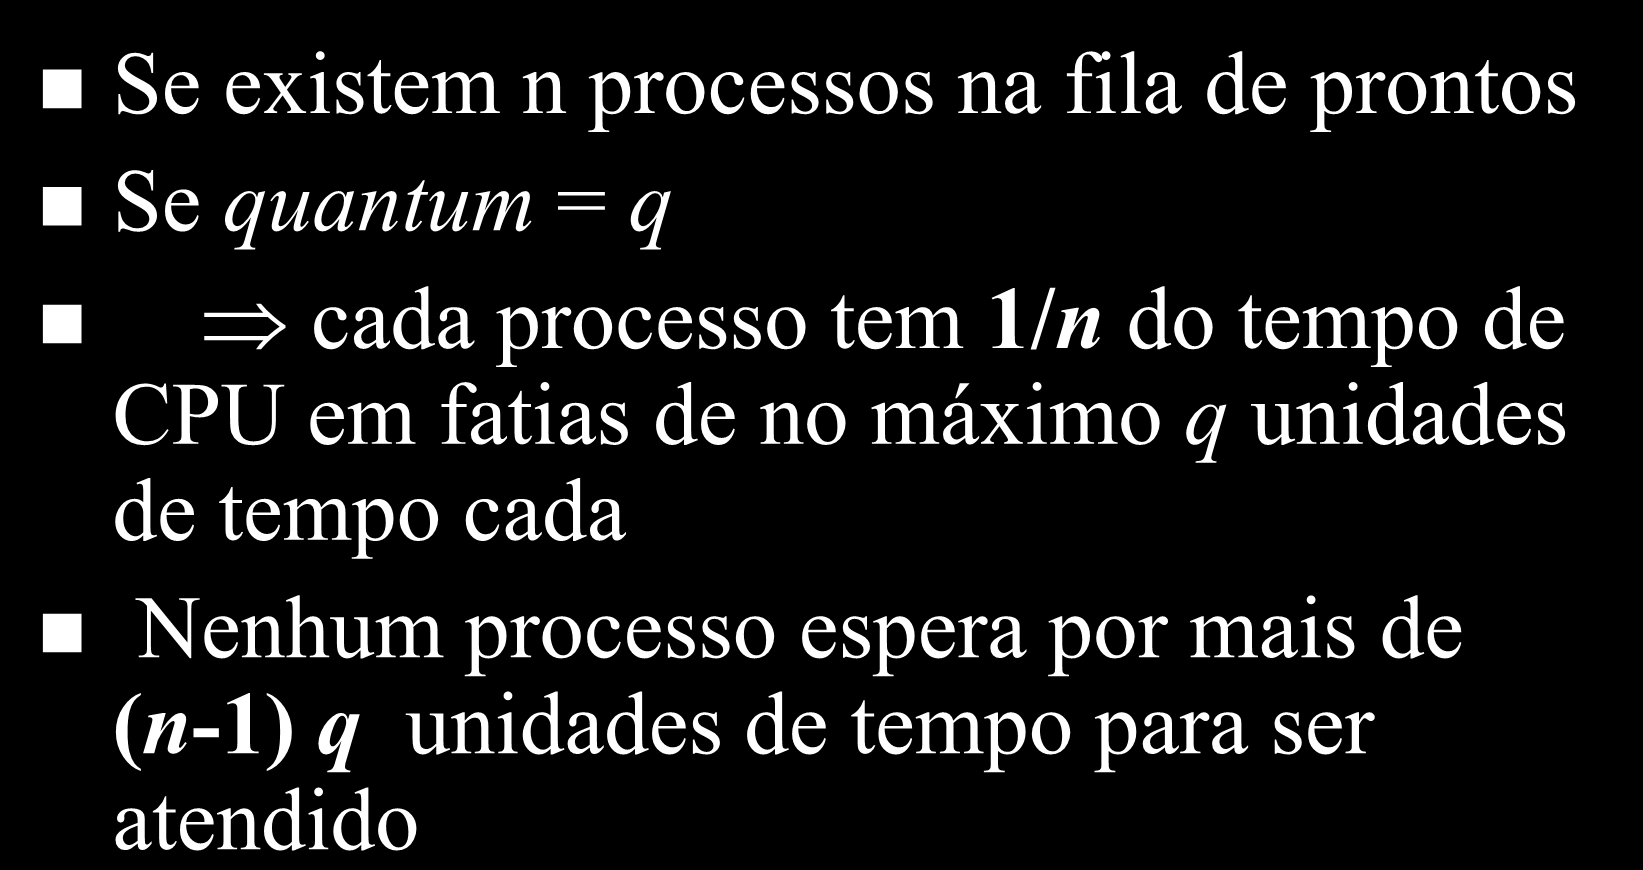 Round-Robin Se existem n processos na fila de prontos Se quantum = q cada processo tem 1/n do tempo de CPU em fatias